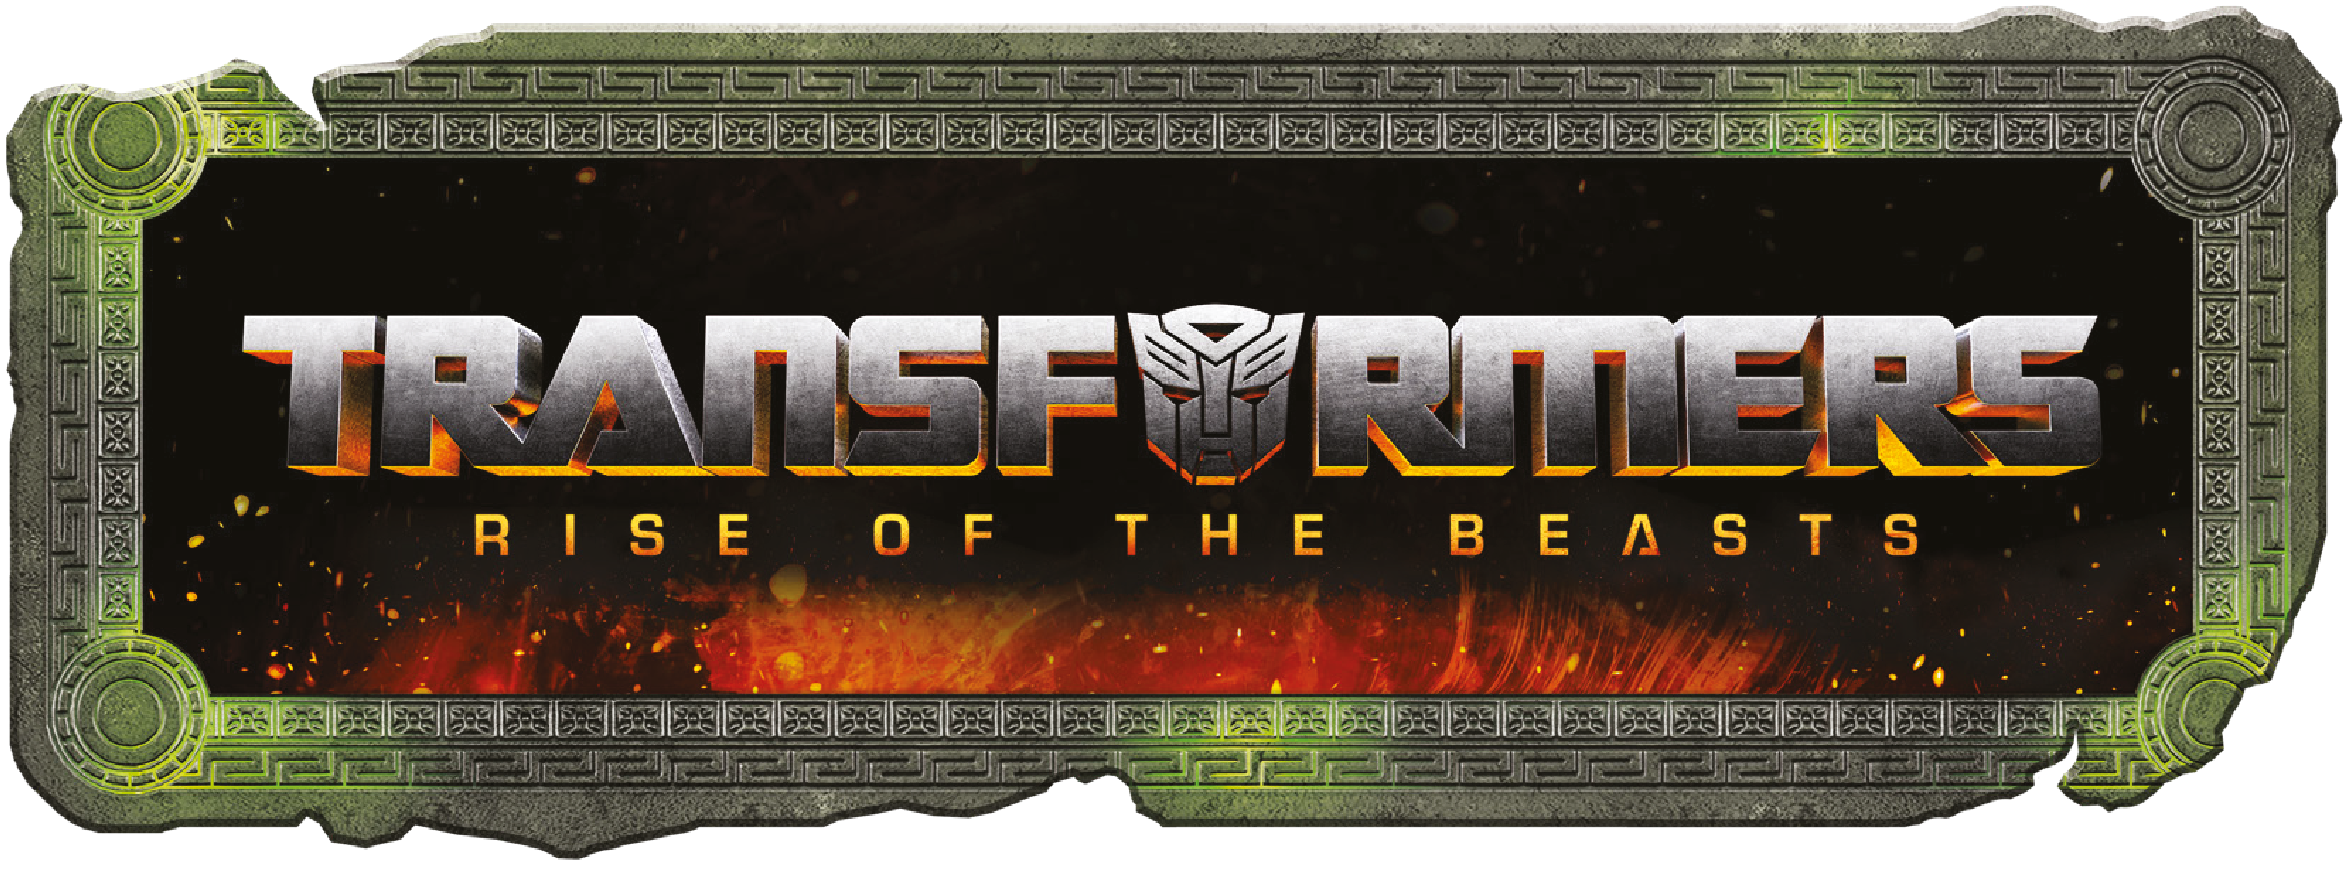 สาวกแฟนคลับ ทรานส์ฟอร์สเมอร์ส ห้ามพลาด! แมพ แอคทีฟ จับมือร่วมกับ ฮาสโบร พร้อมเปิดตัวของเล่นหุ่นยนต์แปลงร่าง Transformers - Rise Of The Beasts